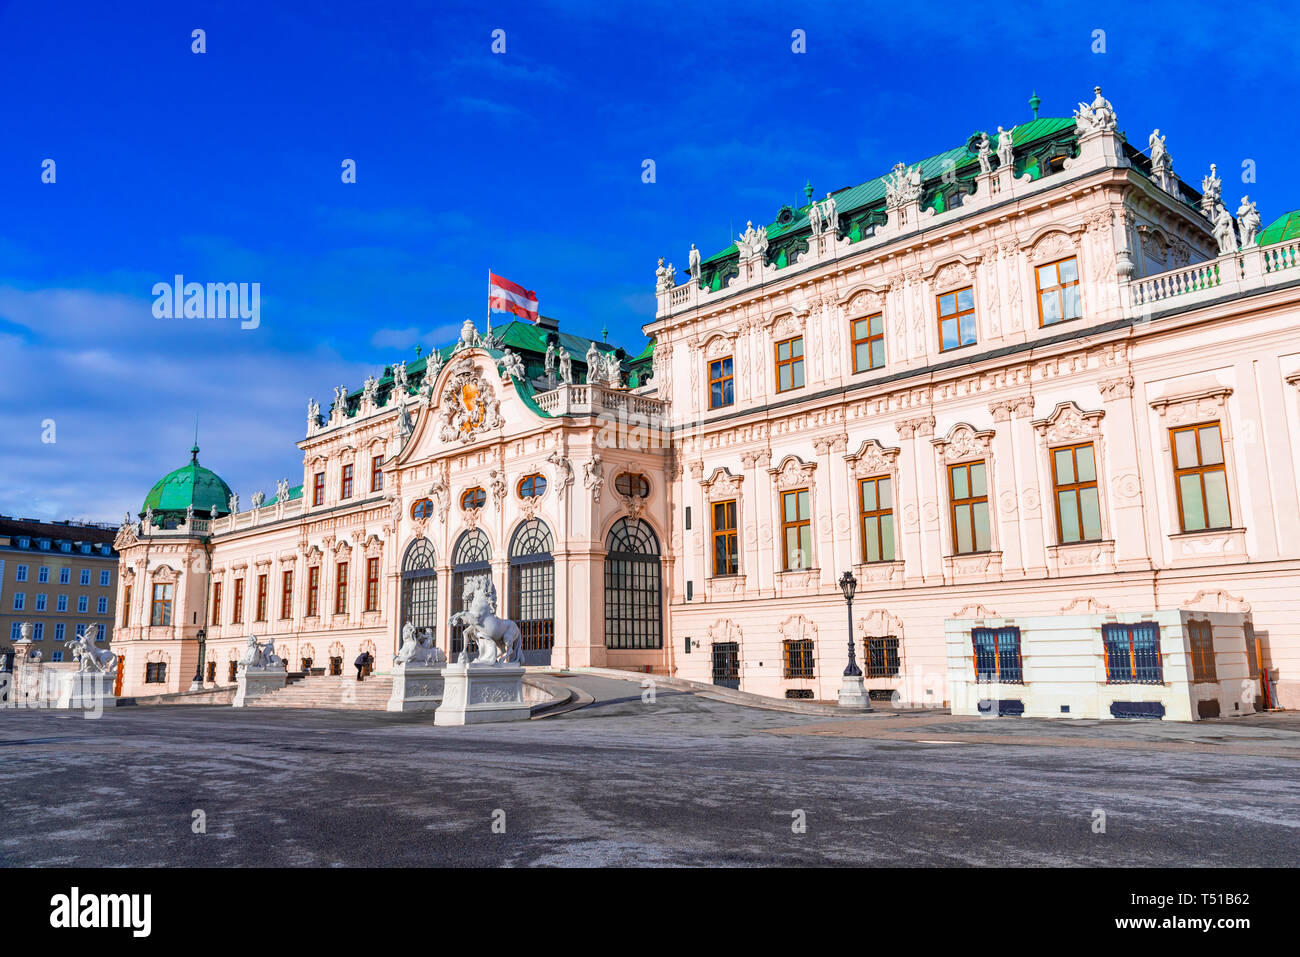 Vienne, Autriche : belle vue sur célèbre Stephansdom ou Belvédère supérieur dans un beau jour de printemps Banque D'Images